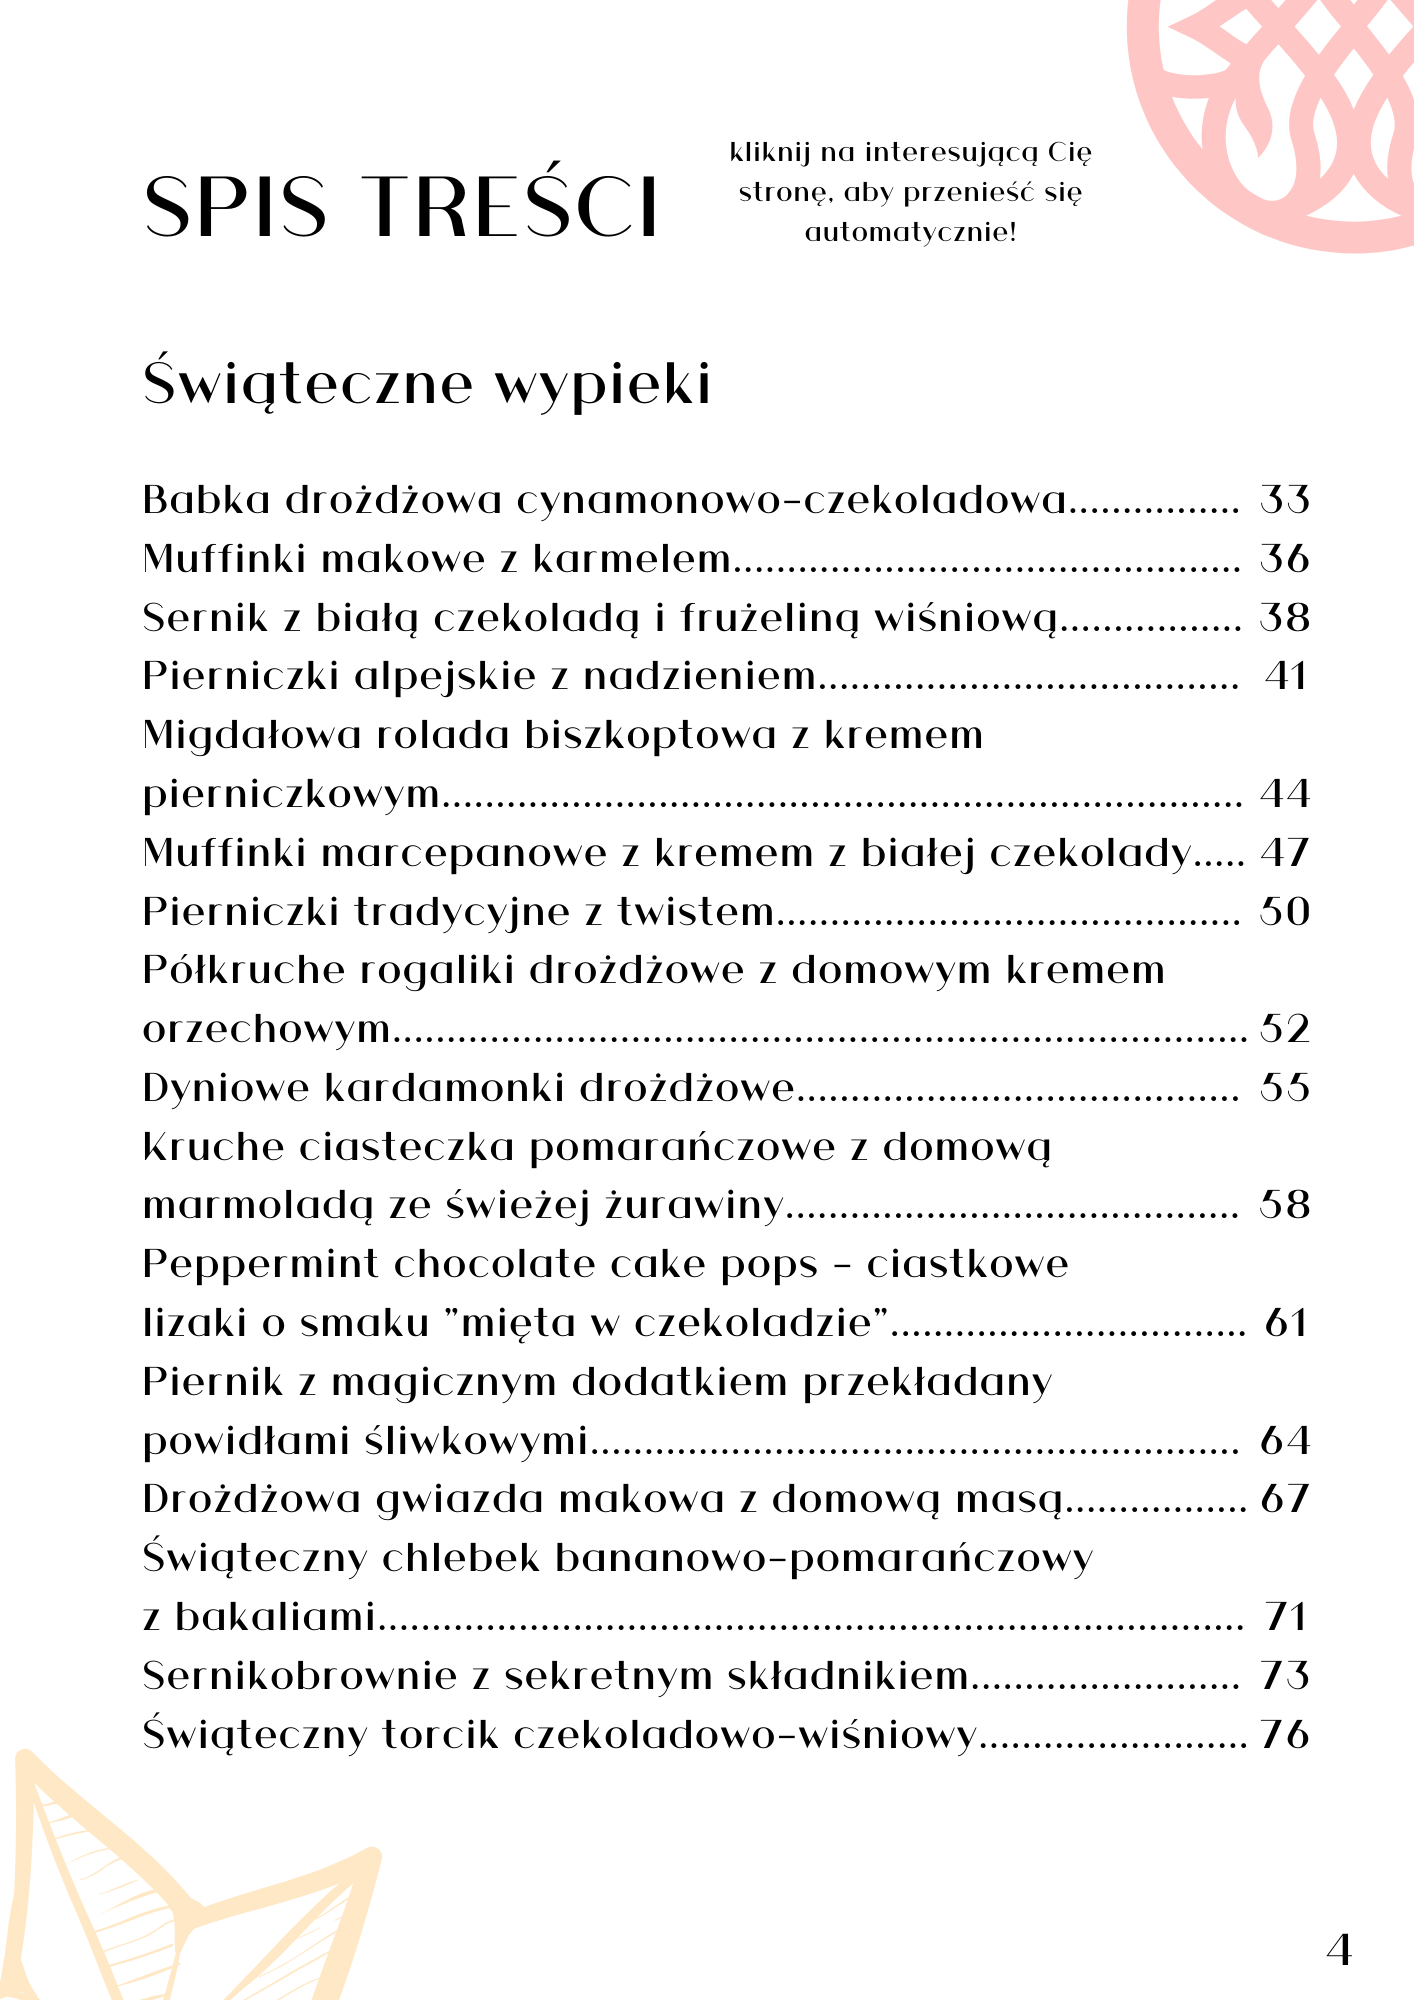 E-book "Słodkich Świąt!"